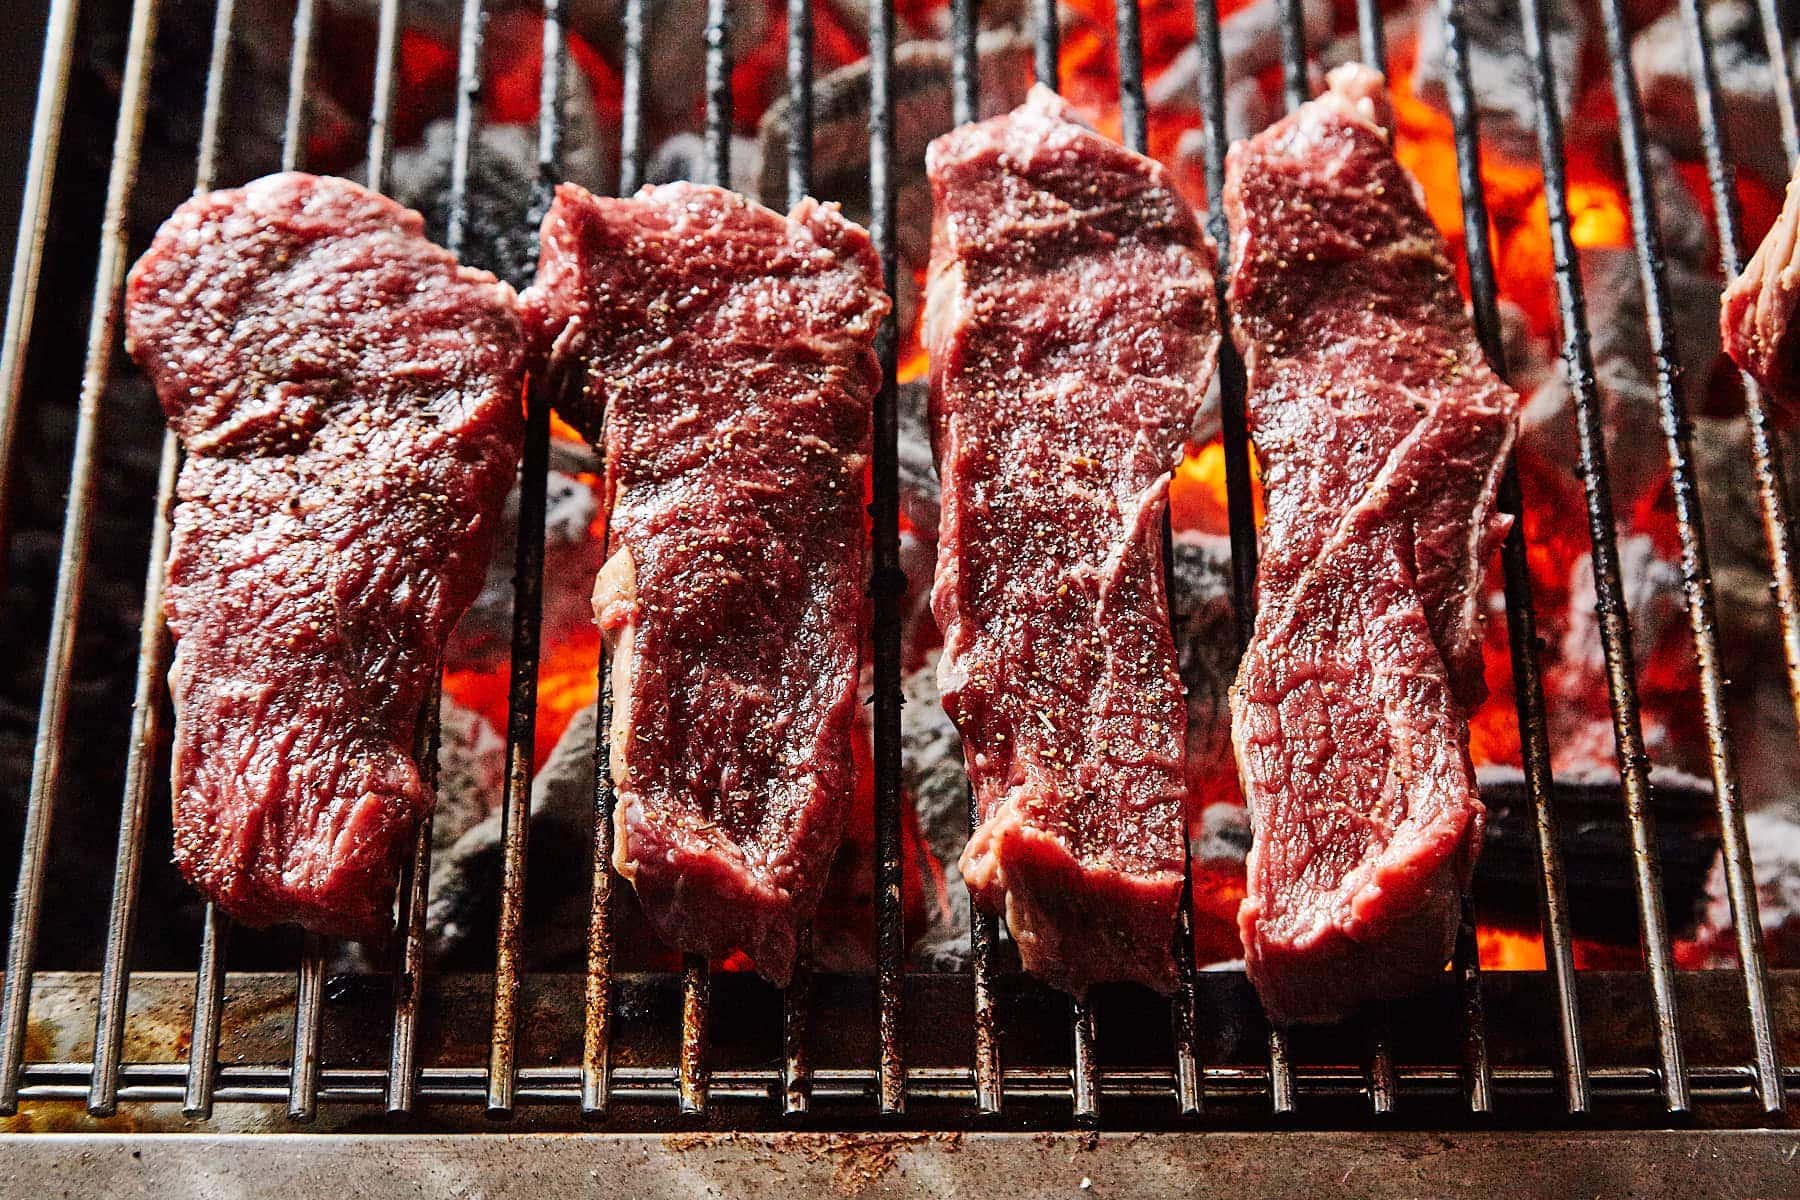 Leckere Steaks auf dem Grillrost - Food Fotografie von David Kliewer aus Trier